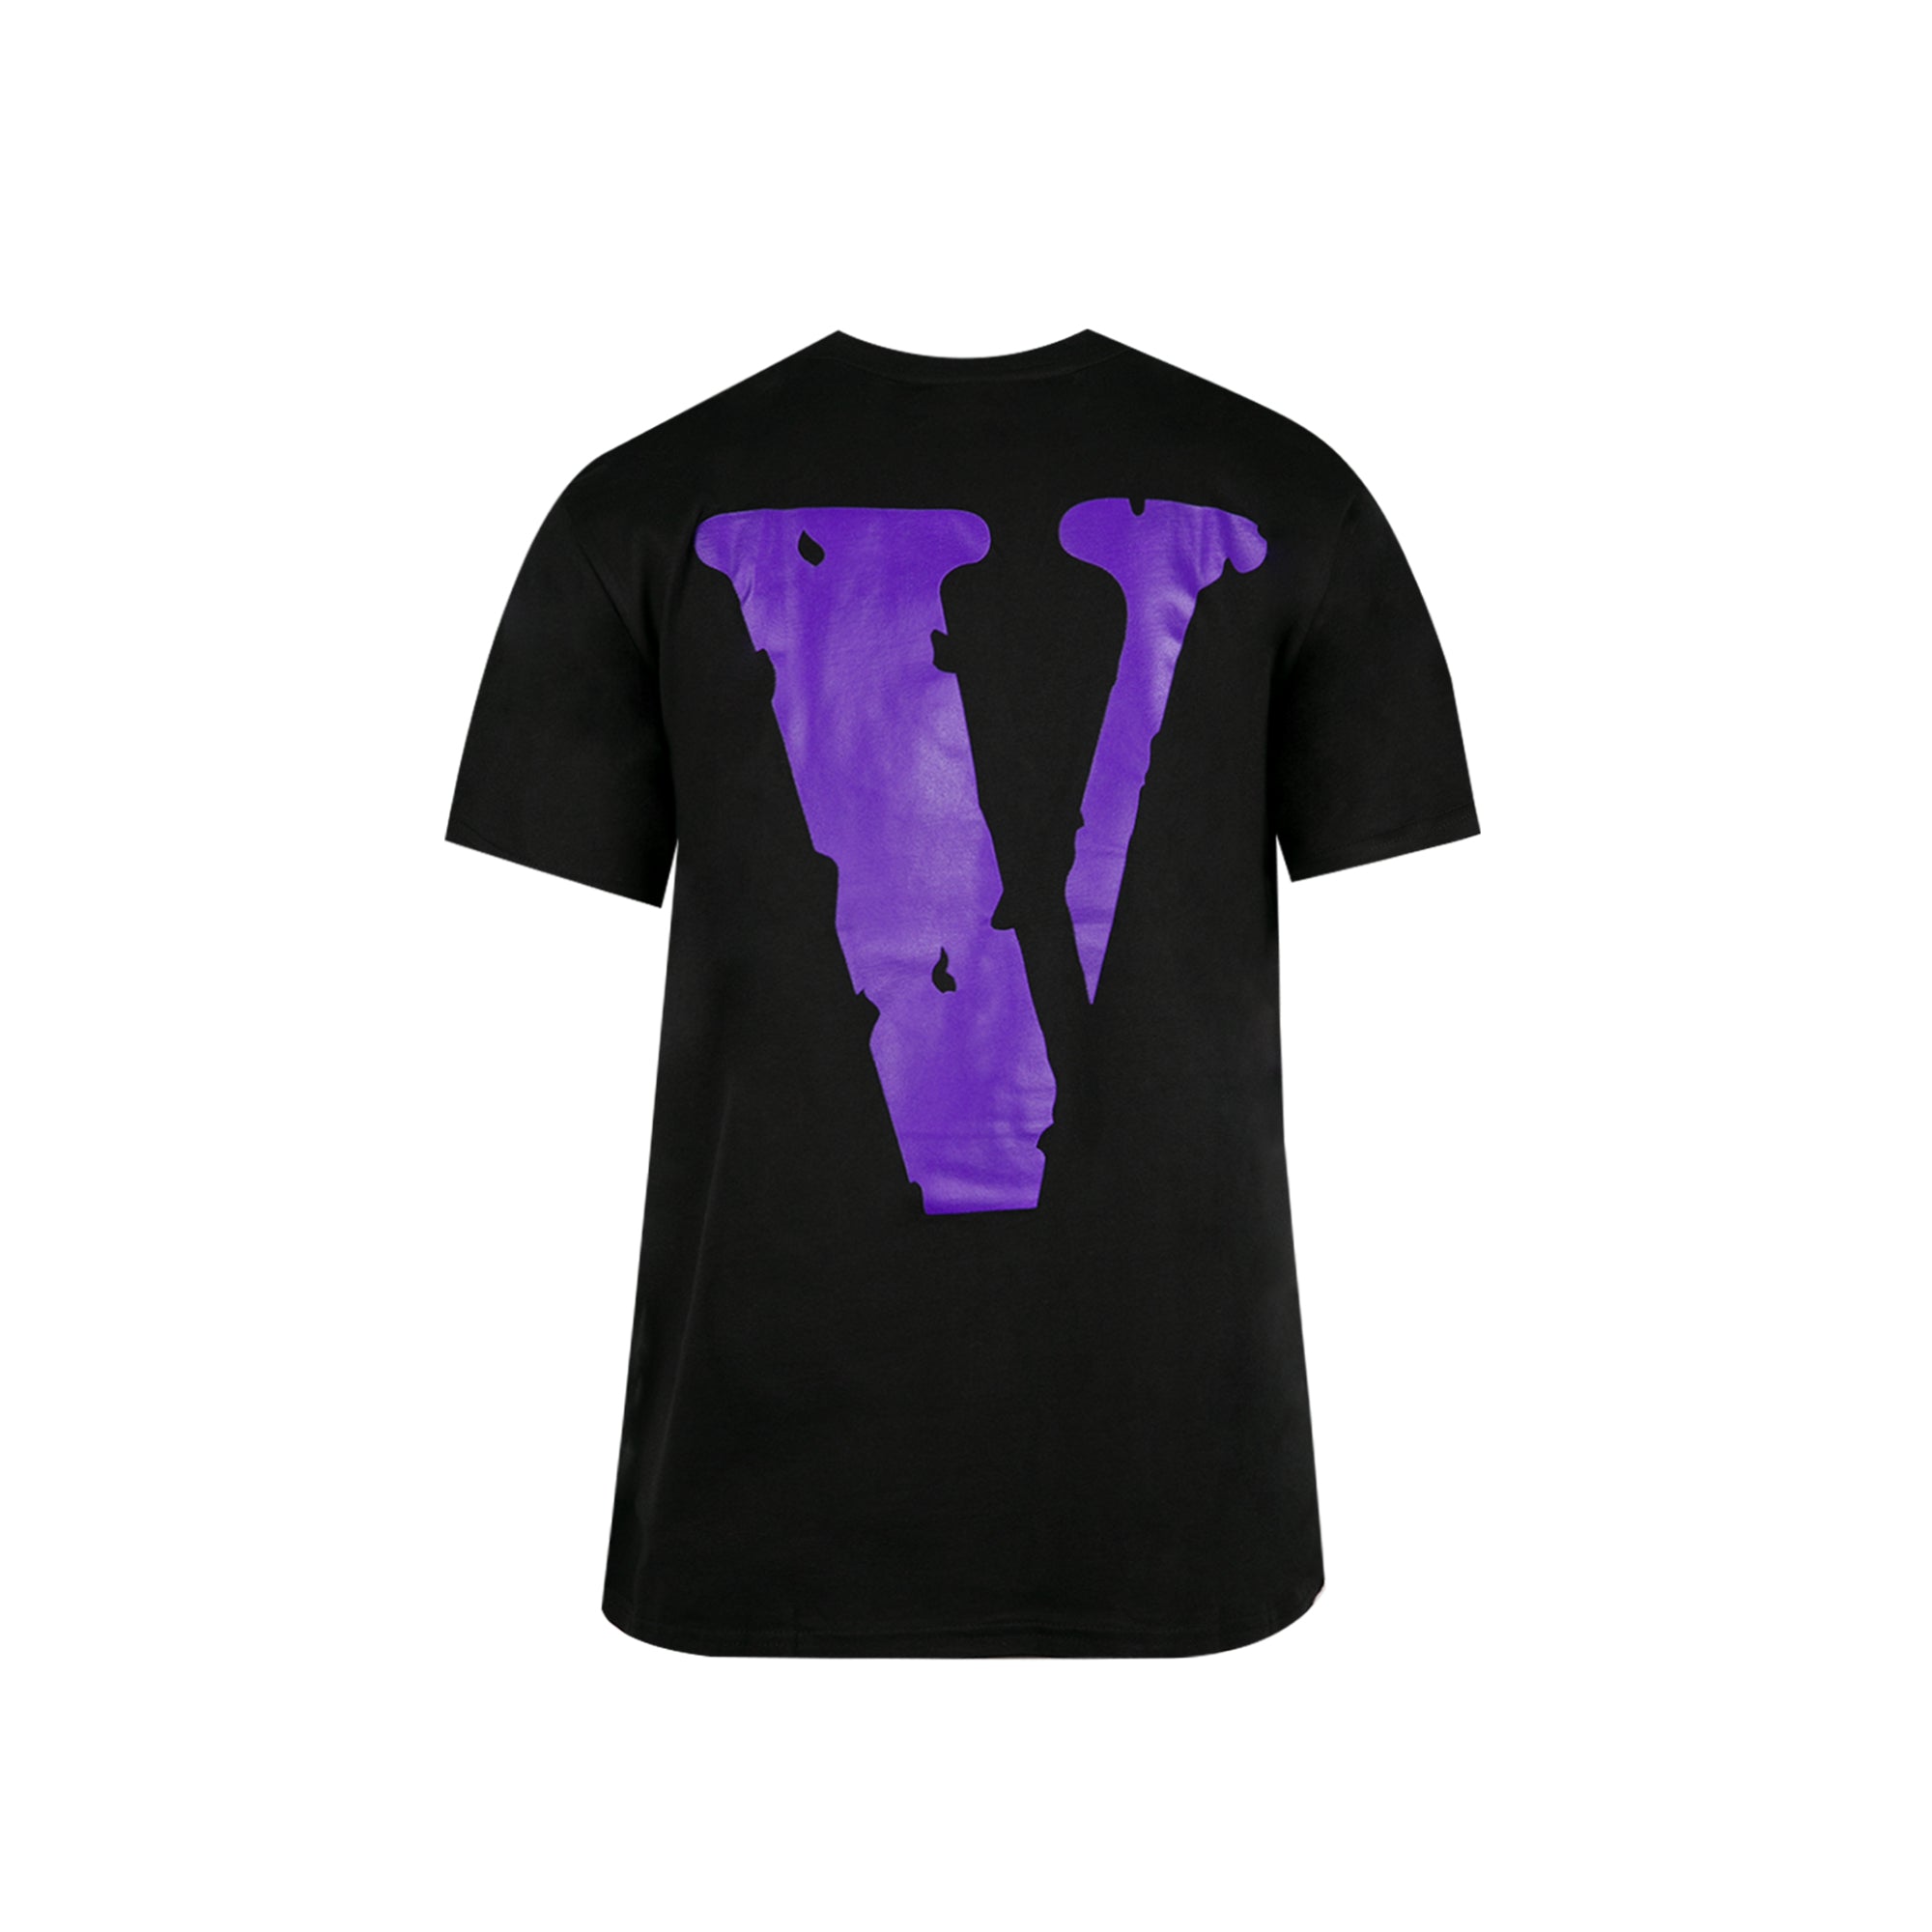 Vlone Friends Cotton Black/ Purple T-Shirt